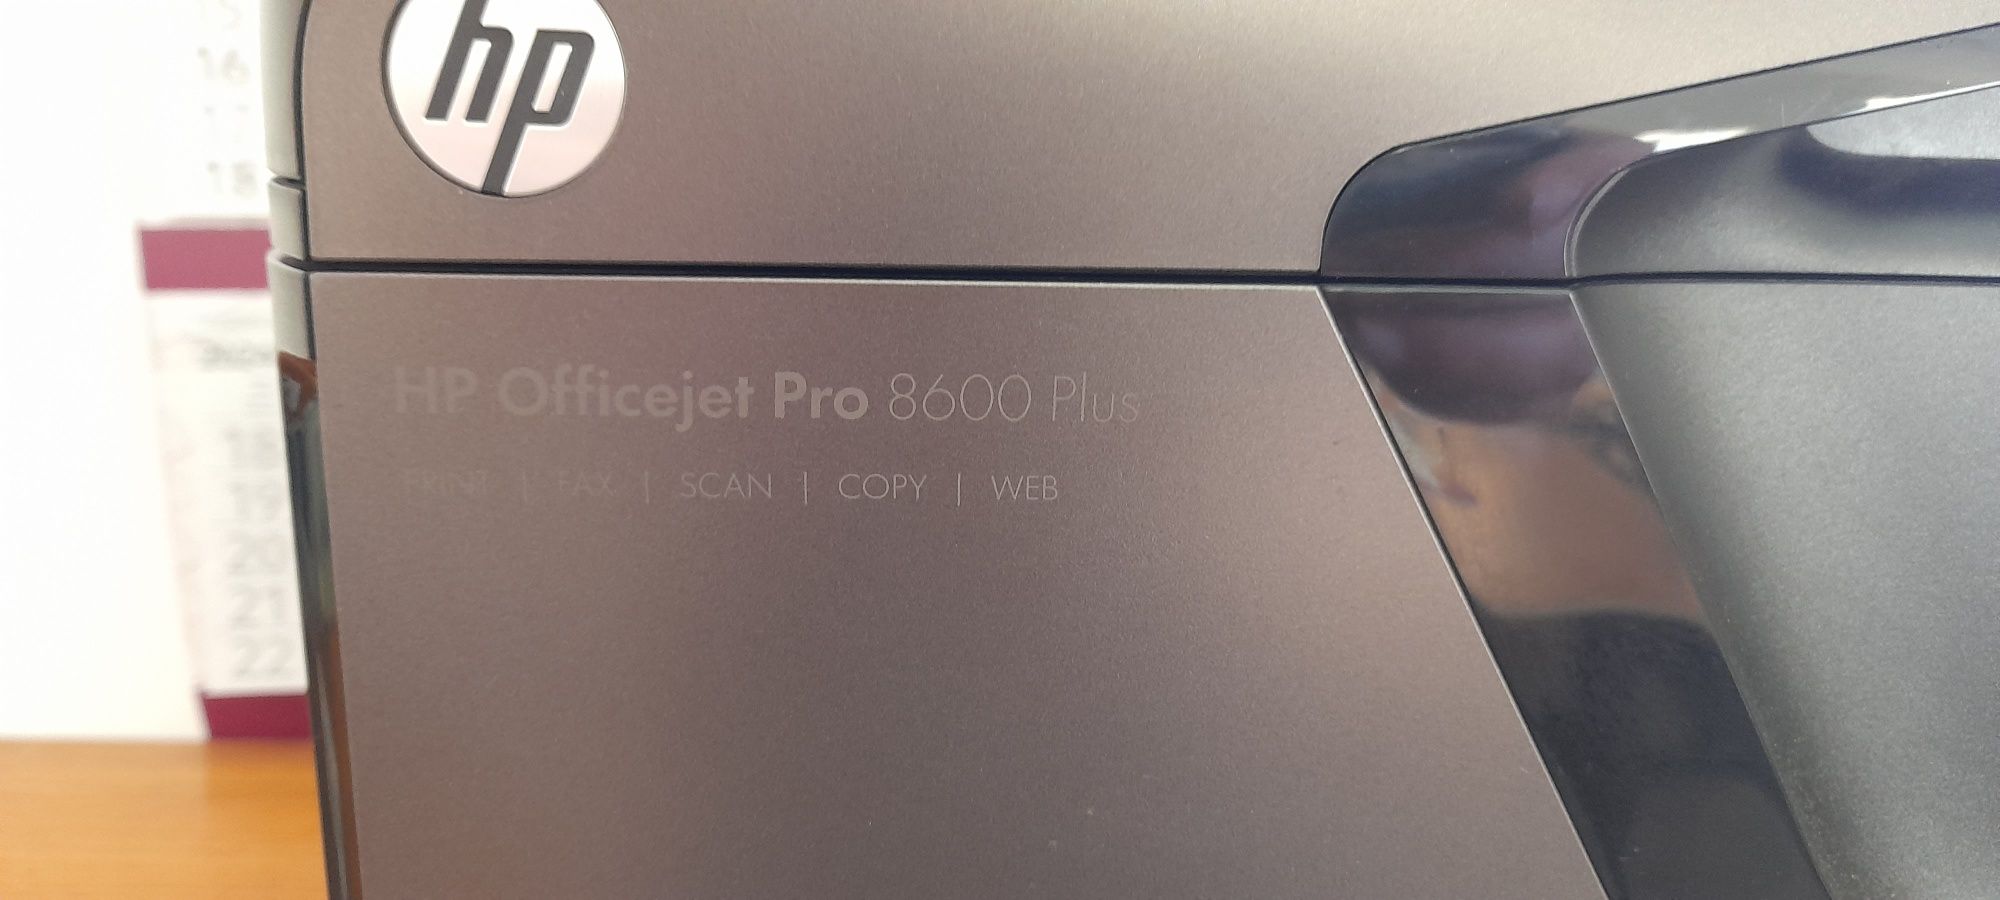 Multifunções  HP officejet pro 8600 plus